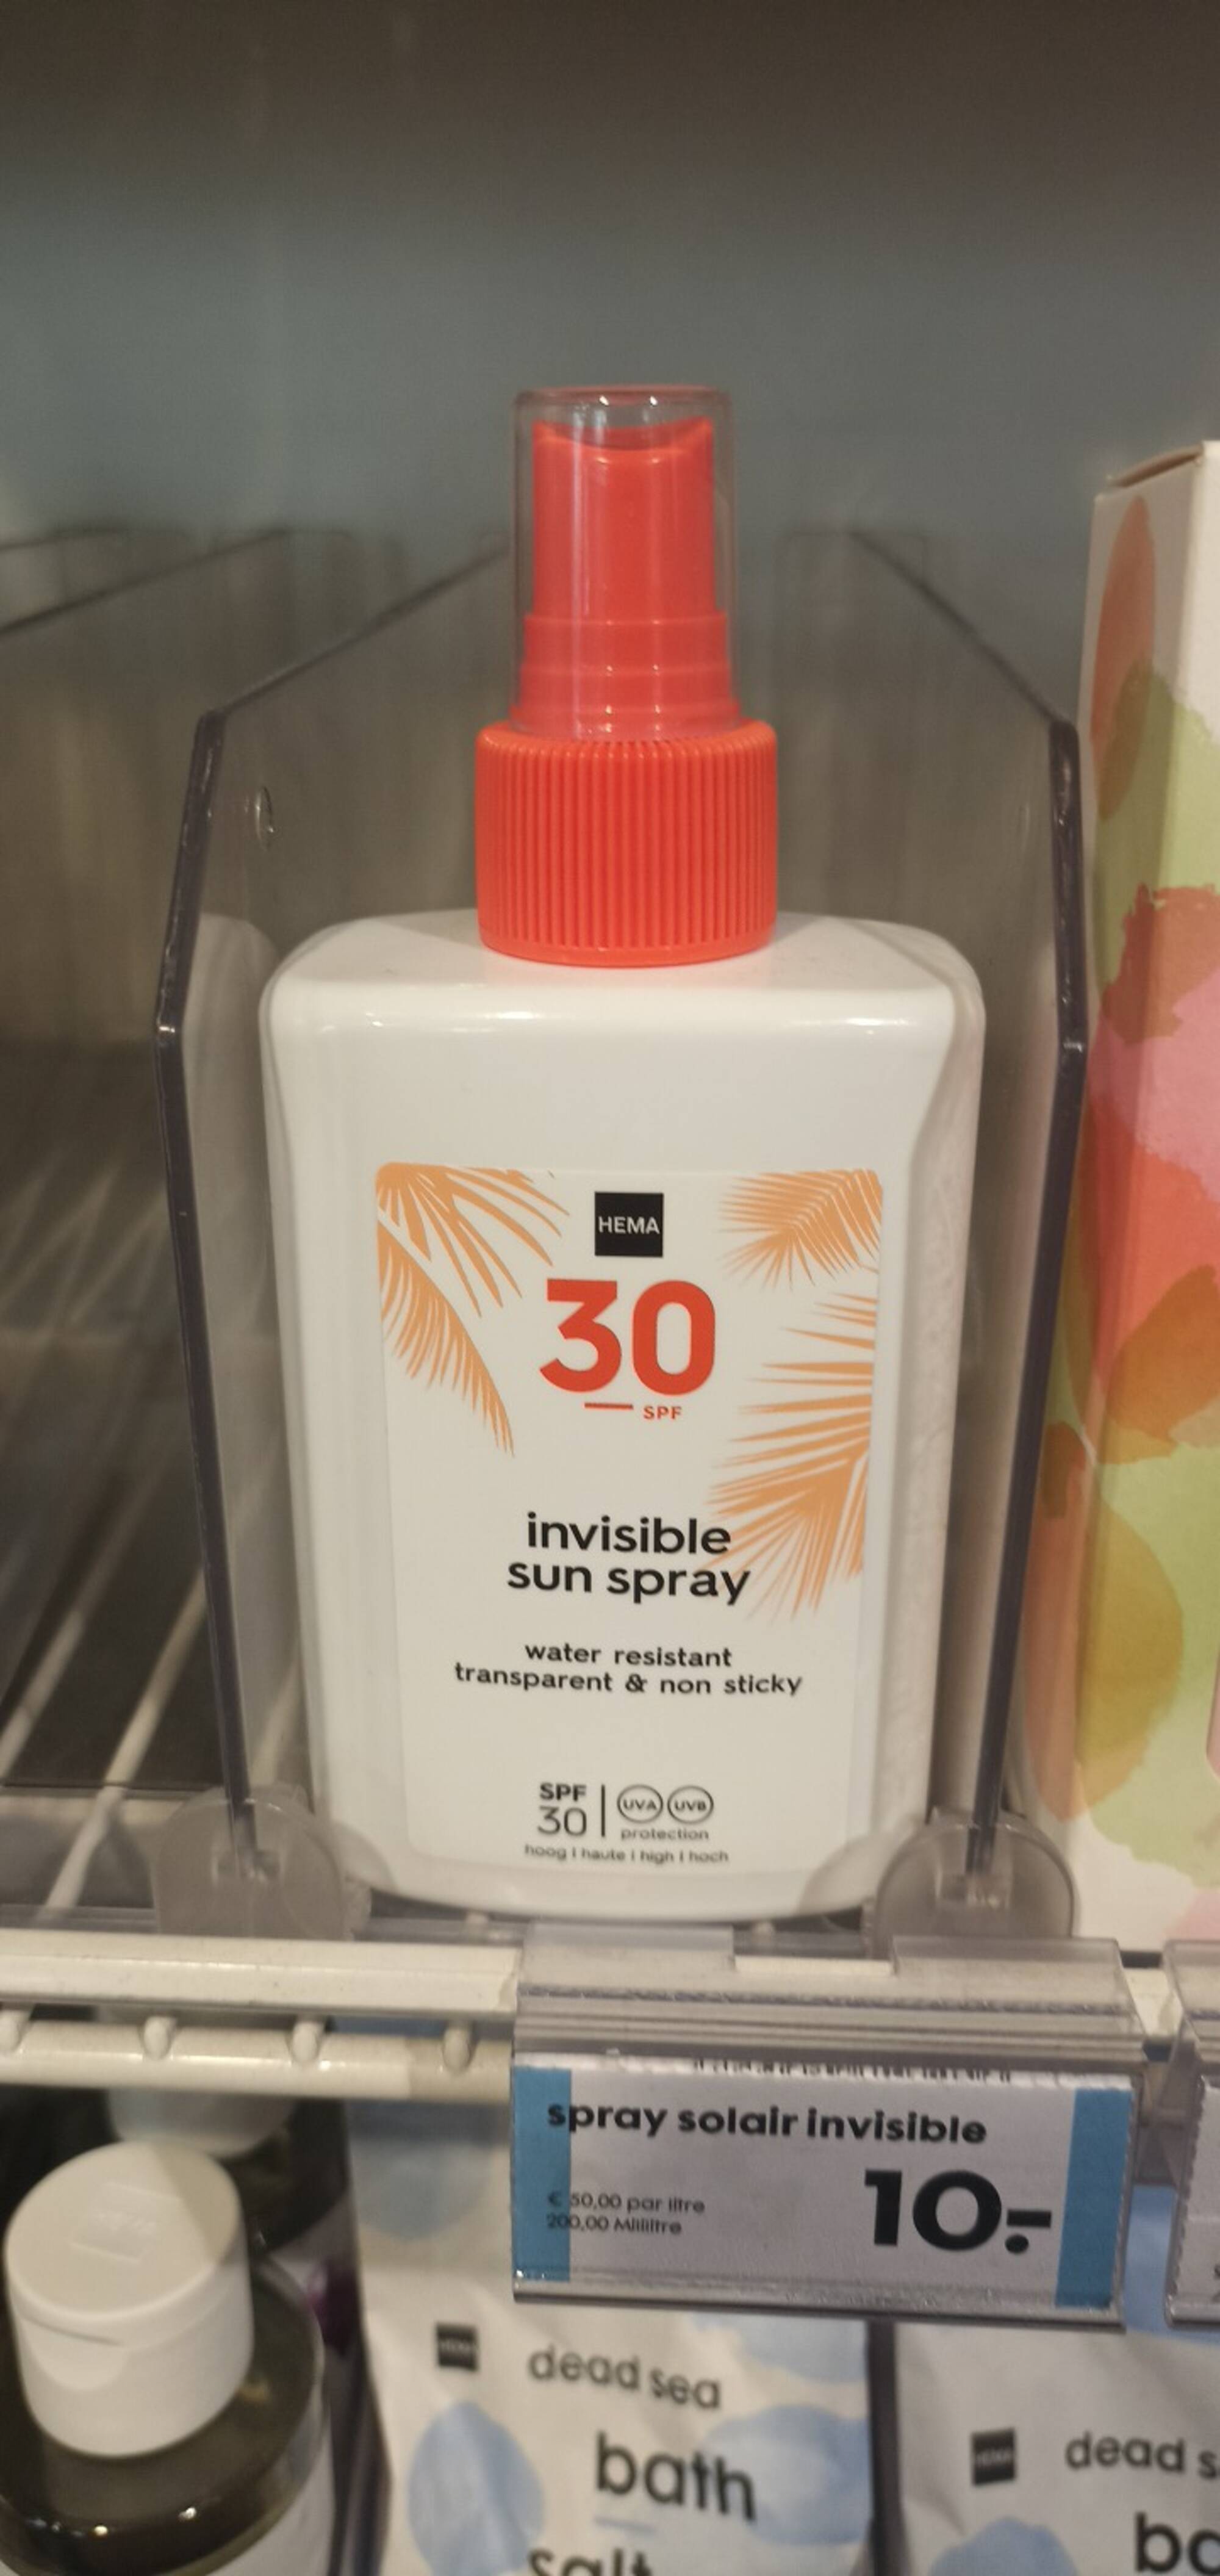 HEMA - Invisible sun spray